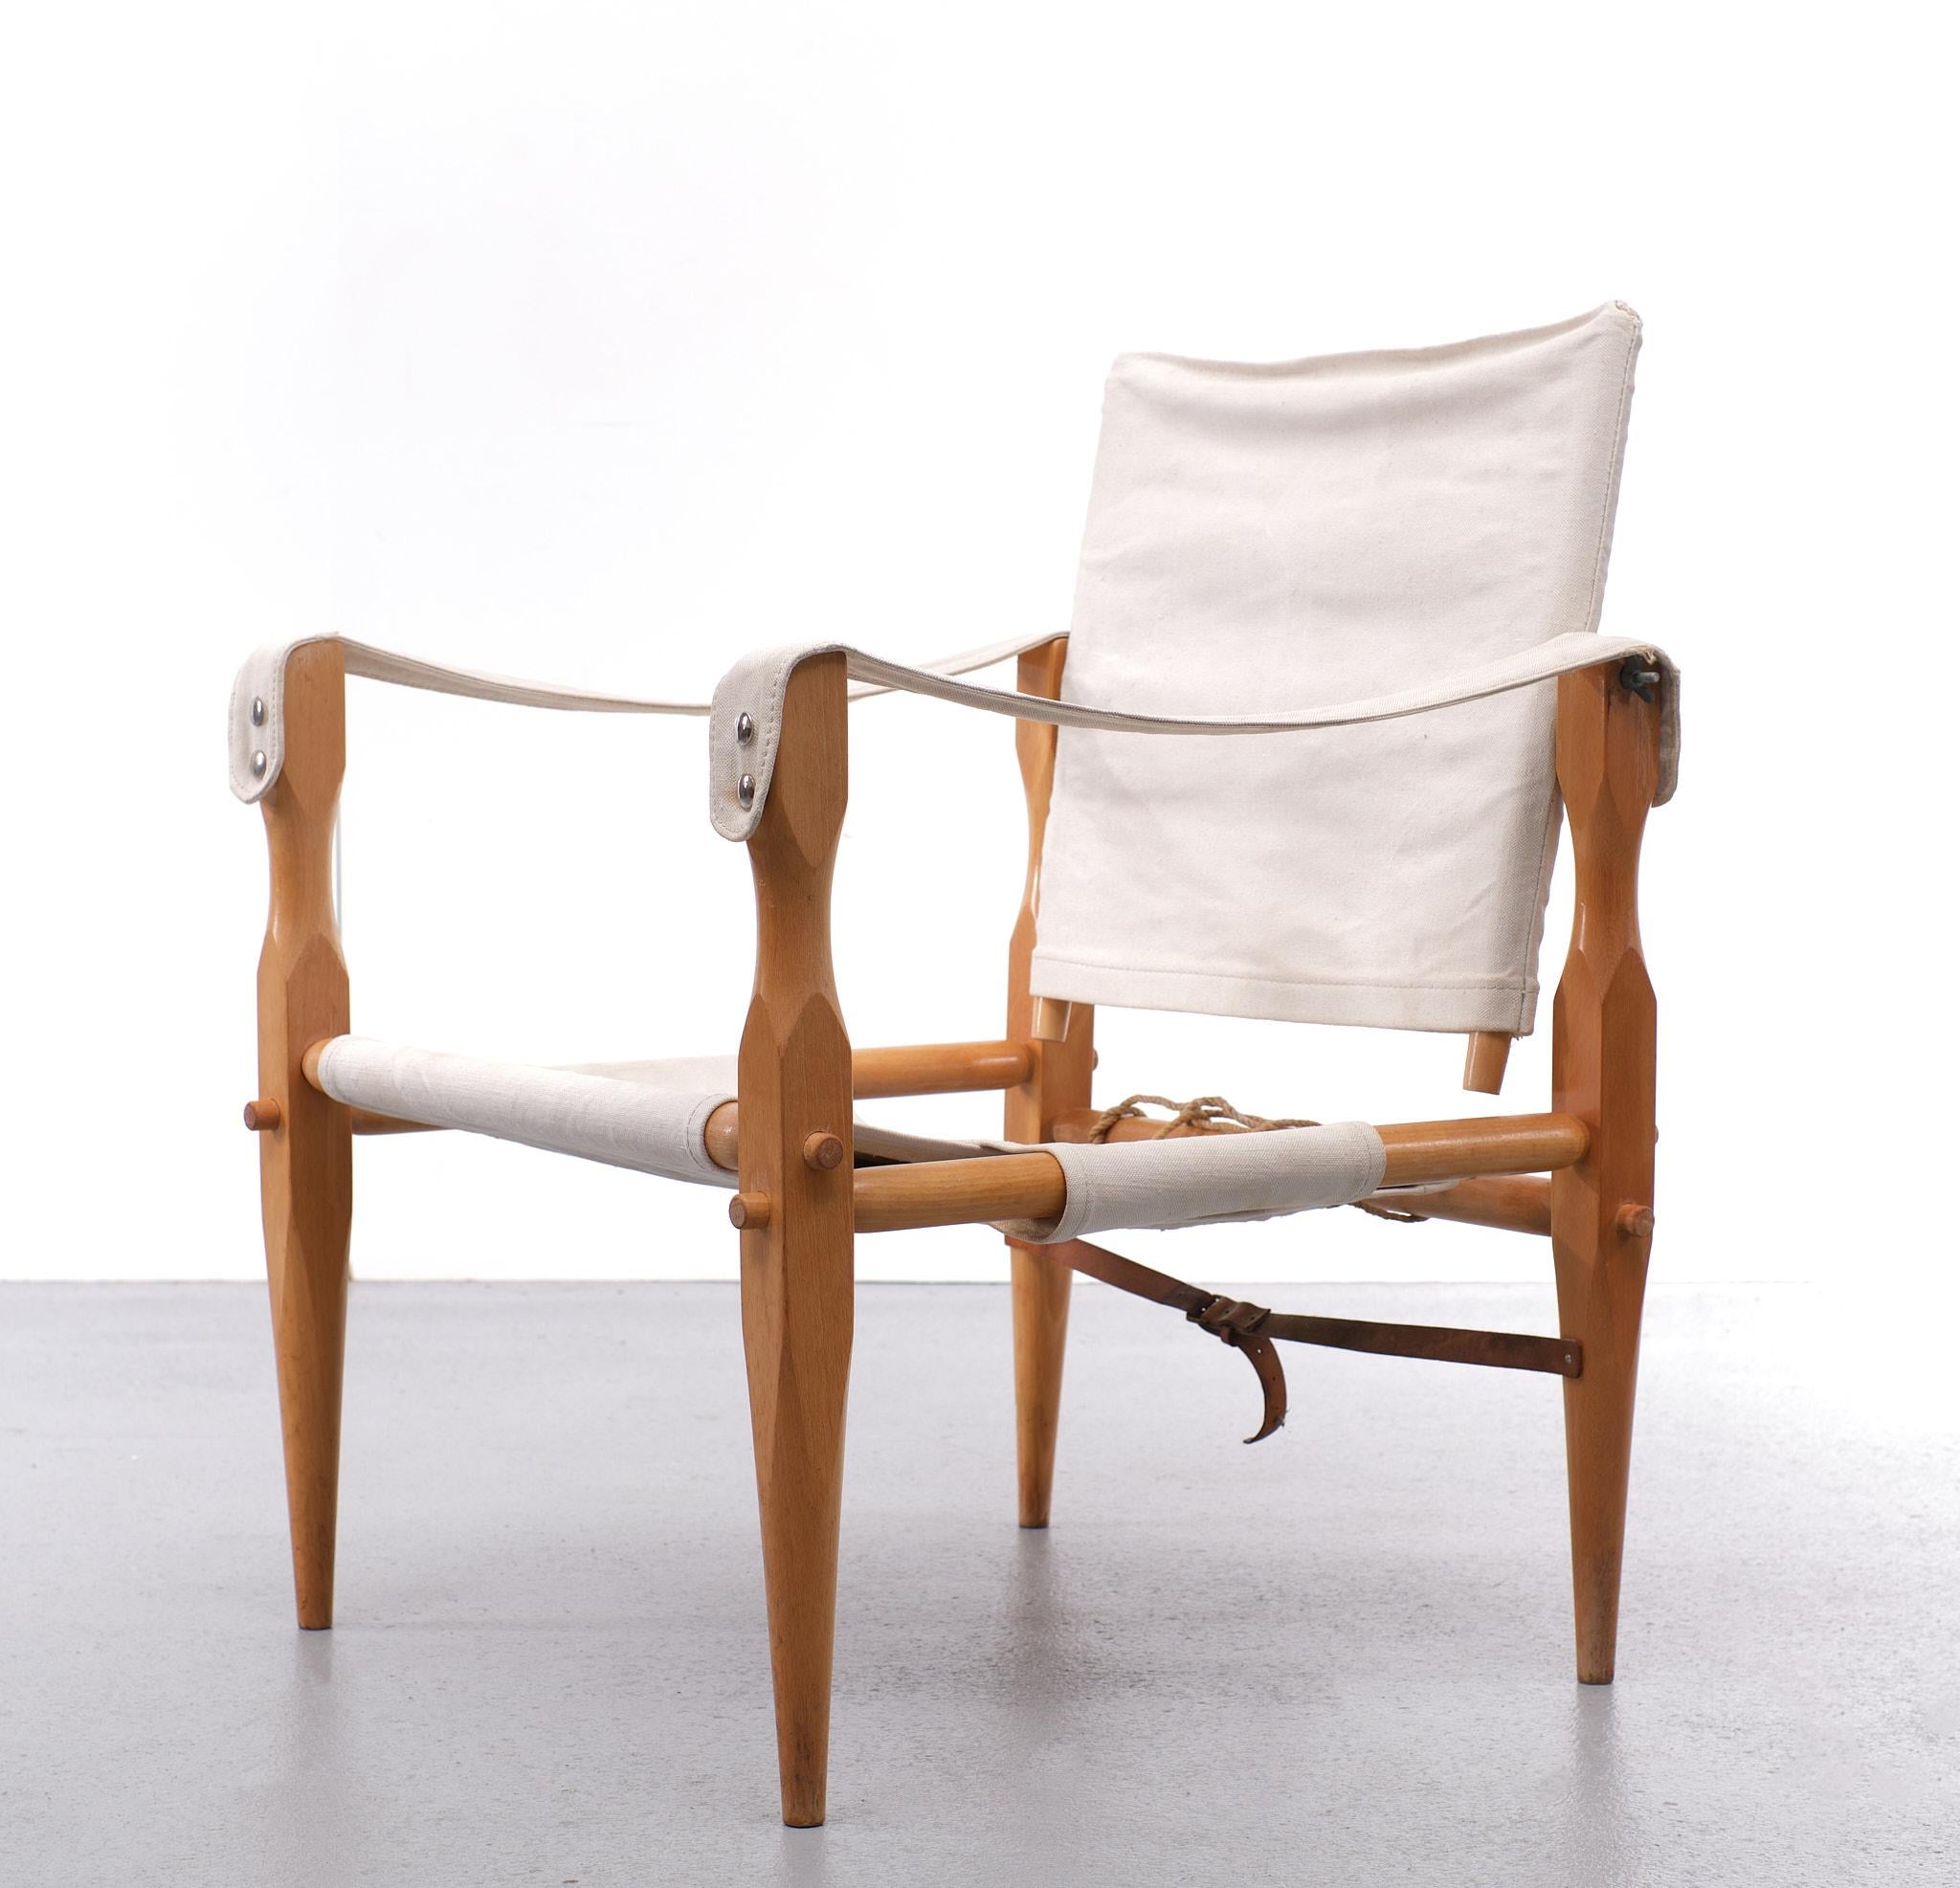 Sehr schöner Safari-Stuhl. Buchenholz zerlegbar Rahmen. kommt mit einem Canvas 
Polstermöbel. Guter Zustand. 1960er Jahre Dänemark.